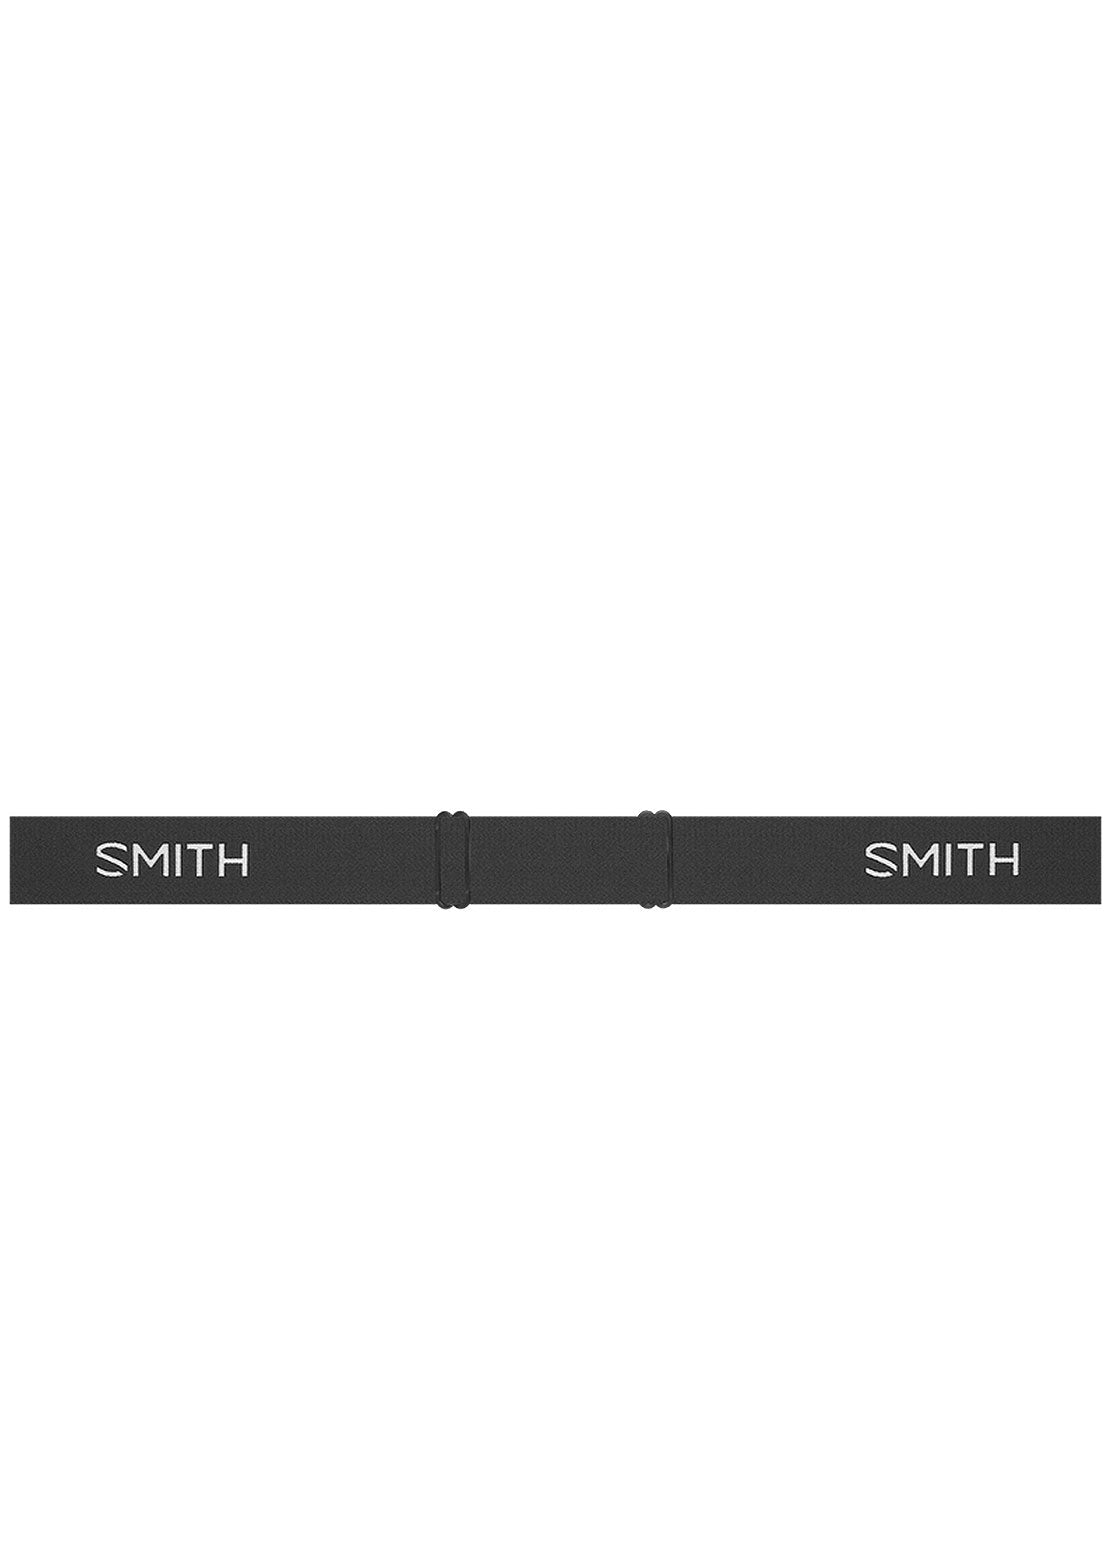 Smith Junior Daredevil Goggles Black/Blue Sensor Mirror